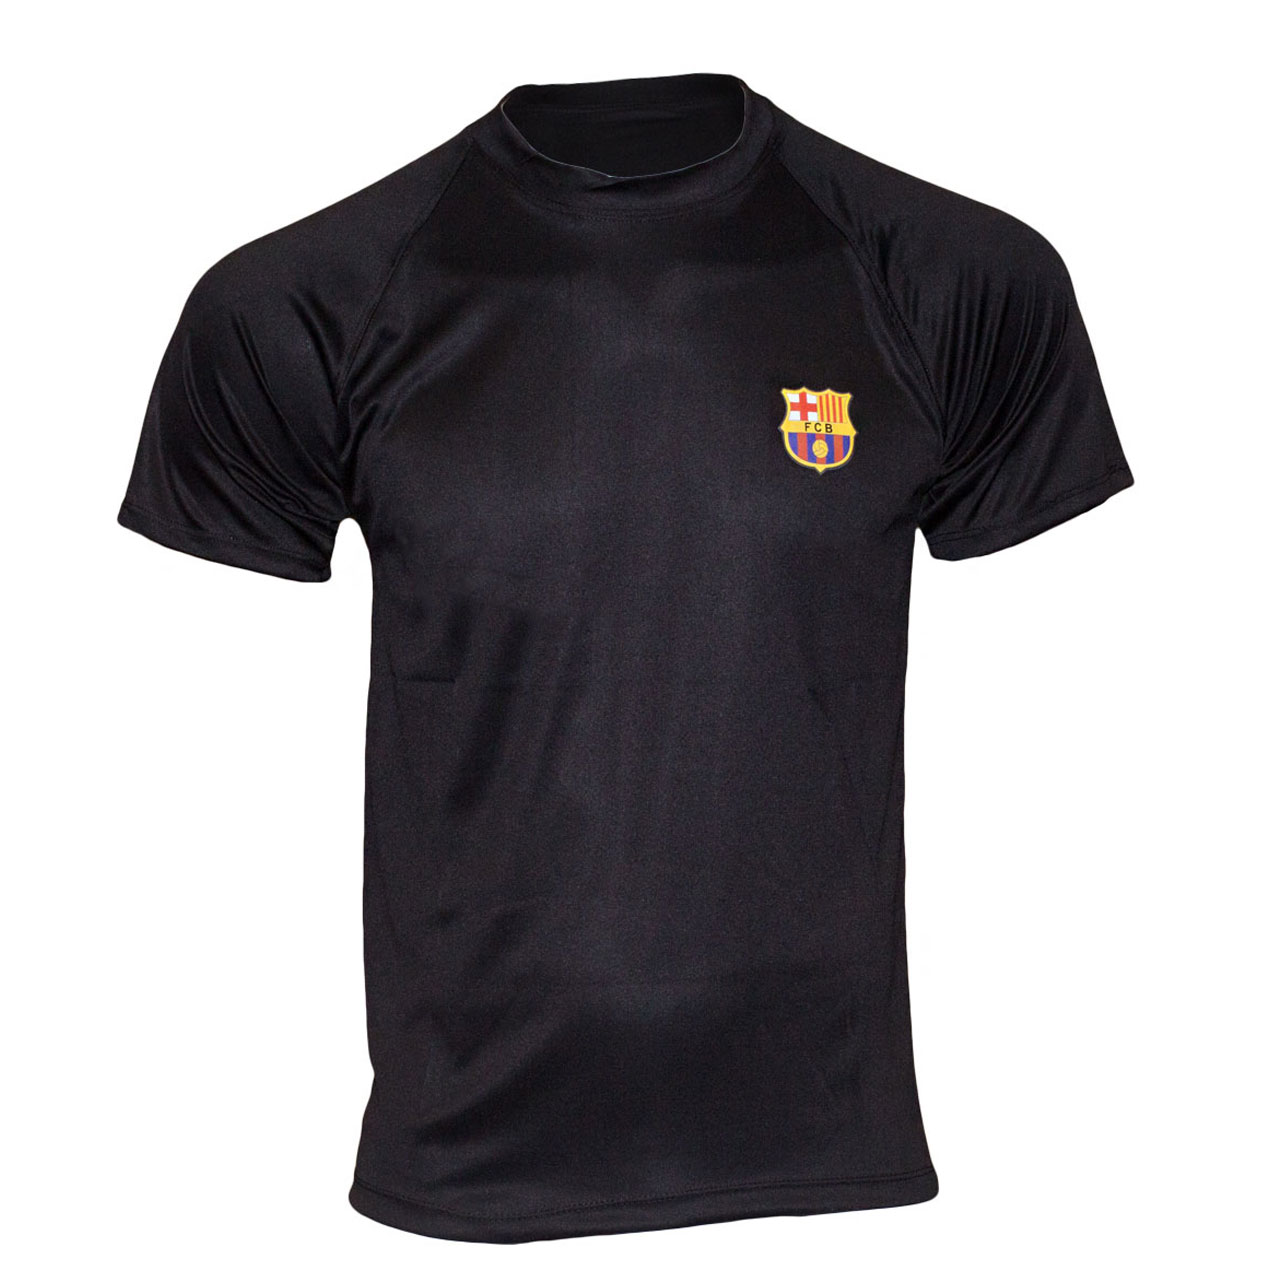 تیشرت ورزشی پسرانه طرح بارسلونا کد A04 -  - 2